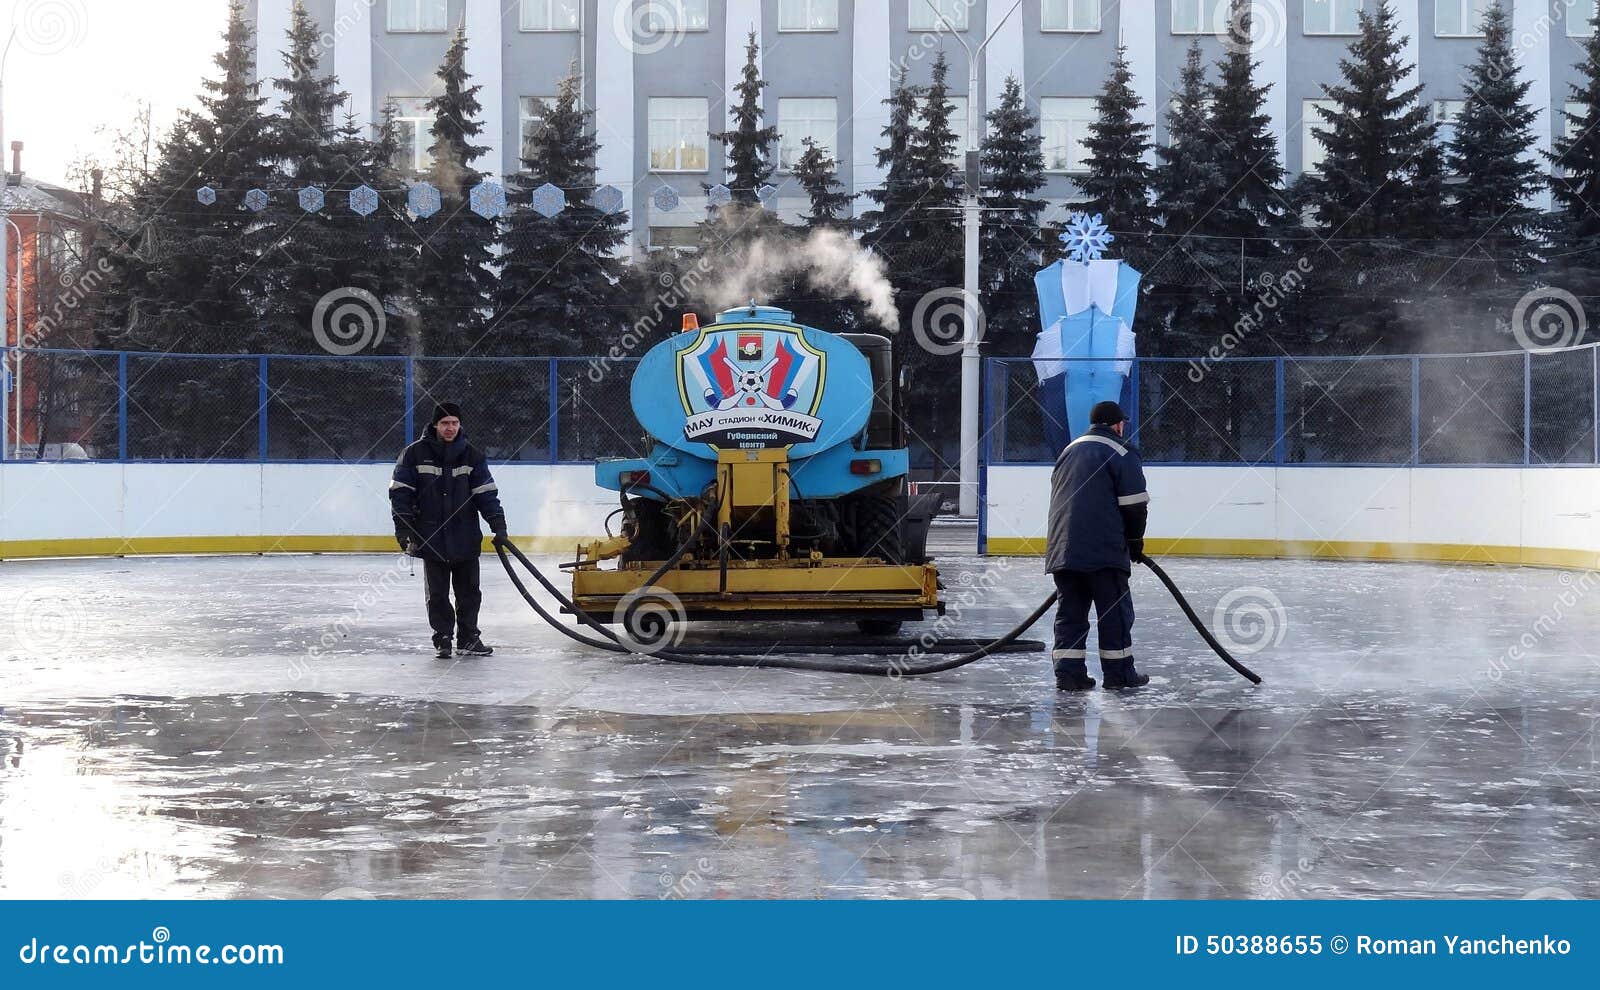 Πόλη Kemerovo ice rink skating. Το κεντρικό τετράγωνο της πόλης, εργαζόμενοι συμπληρώνει μια αίθουσα παγοδρομίας πατινάζ